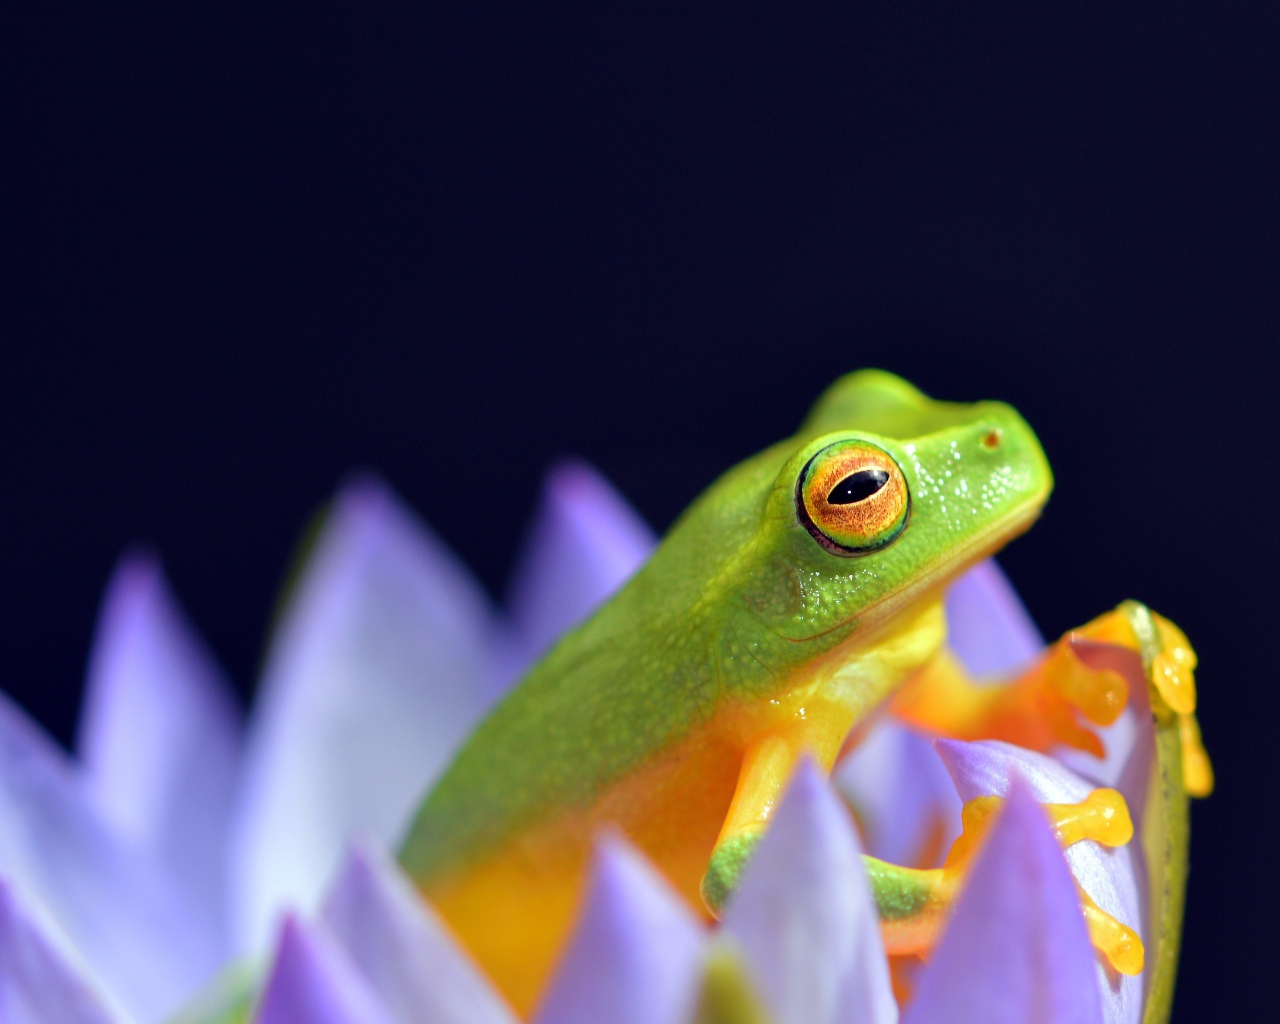 Зеленая лягушка сидит в цветке лотоса на синем фоне